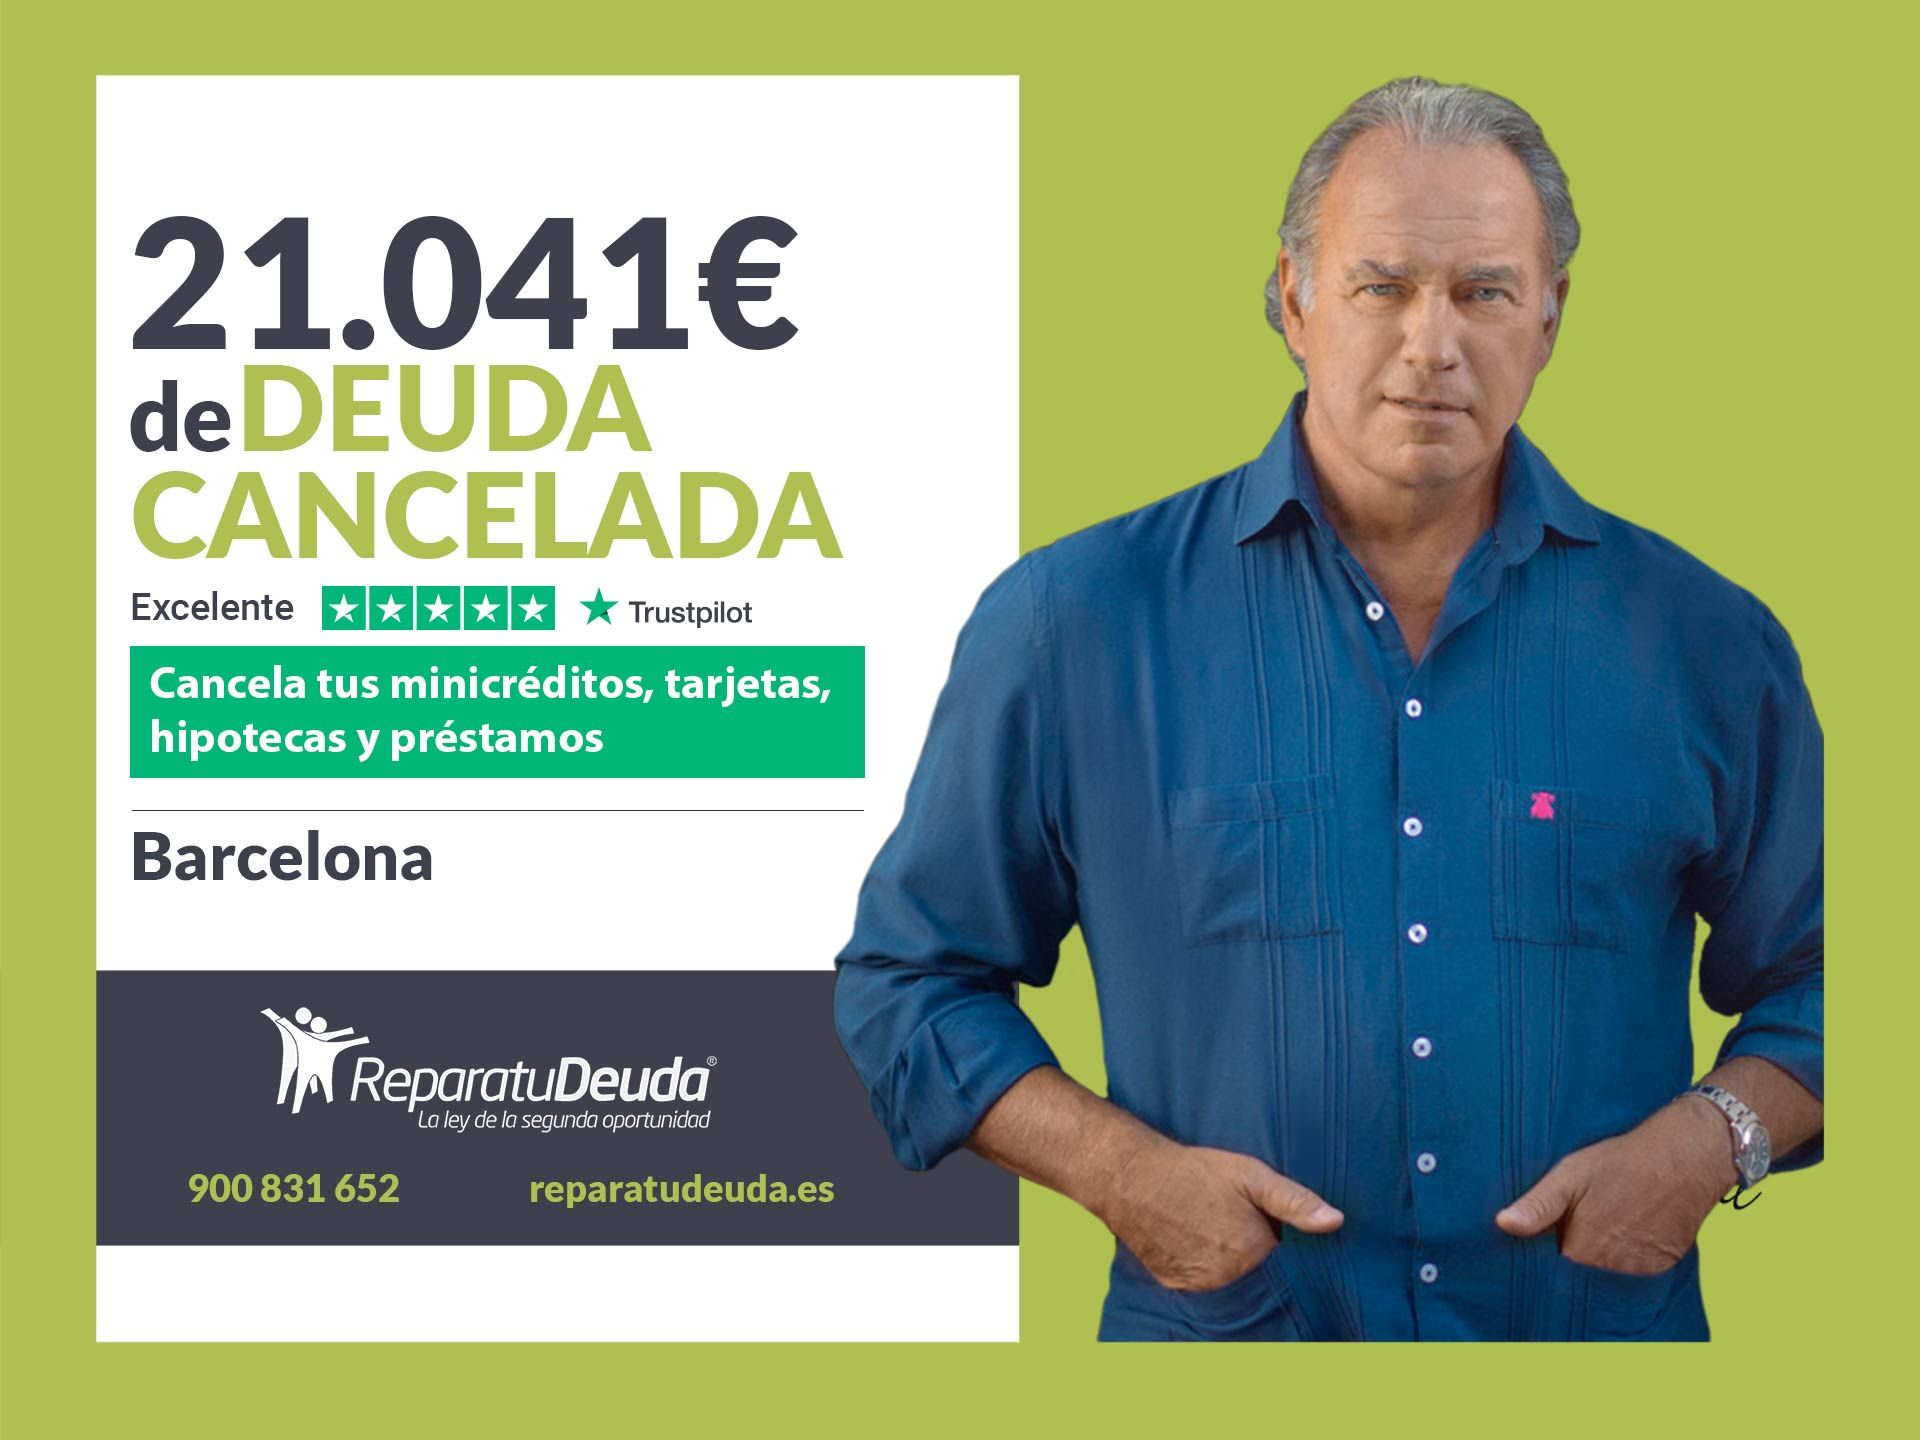 Repara tu Deuda Abogados cancela 21.041? en Barcelona (Catalunya) con la Ley de Segunda Oportunidad